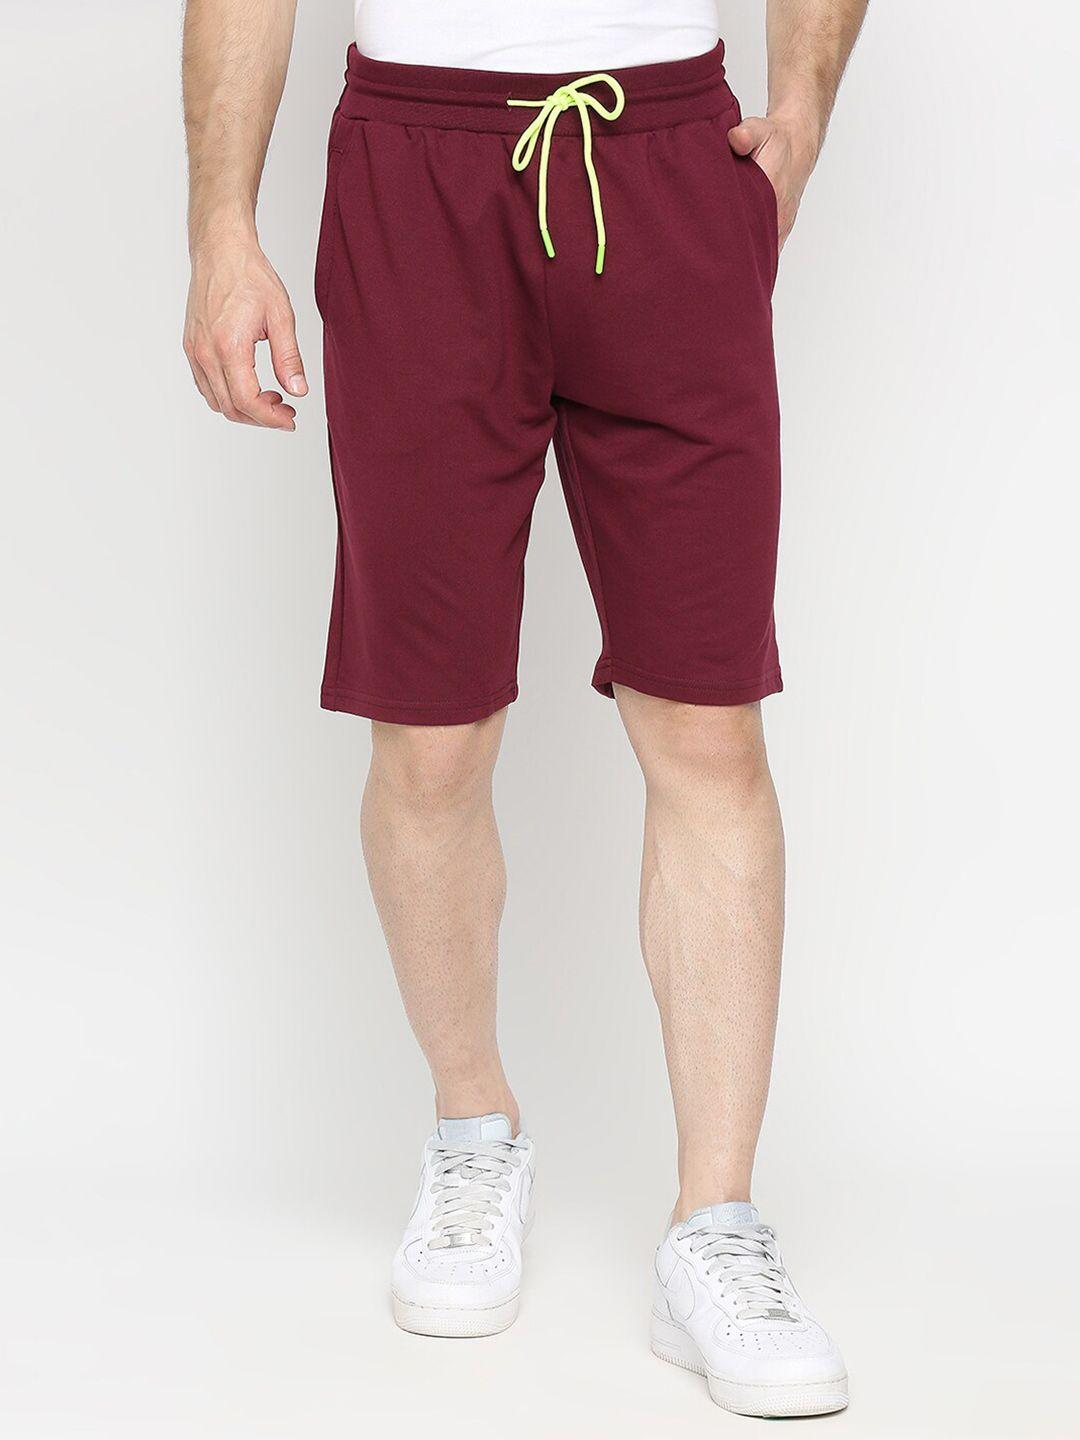 underjeans-by-spykar-men-maroon-solid-shorts